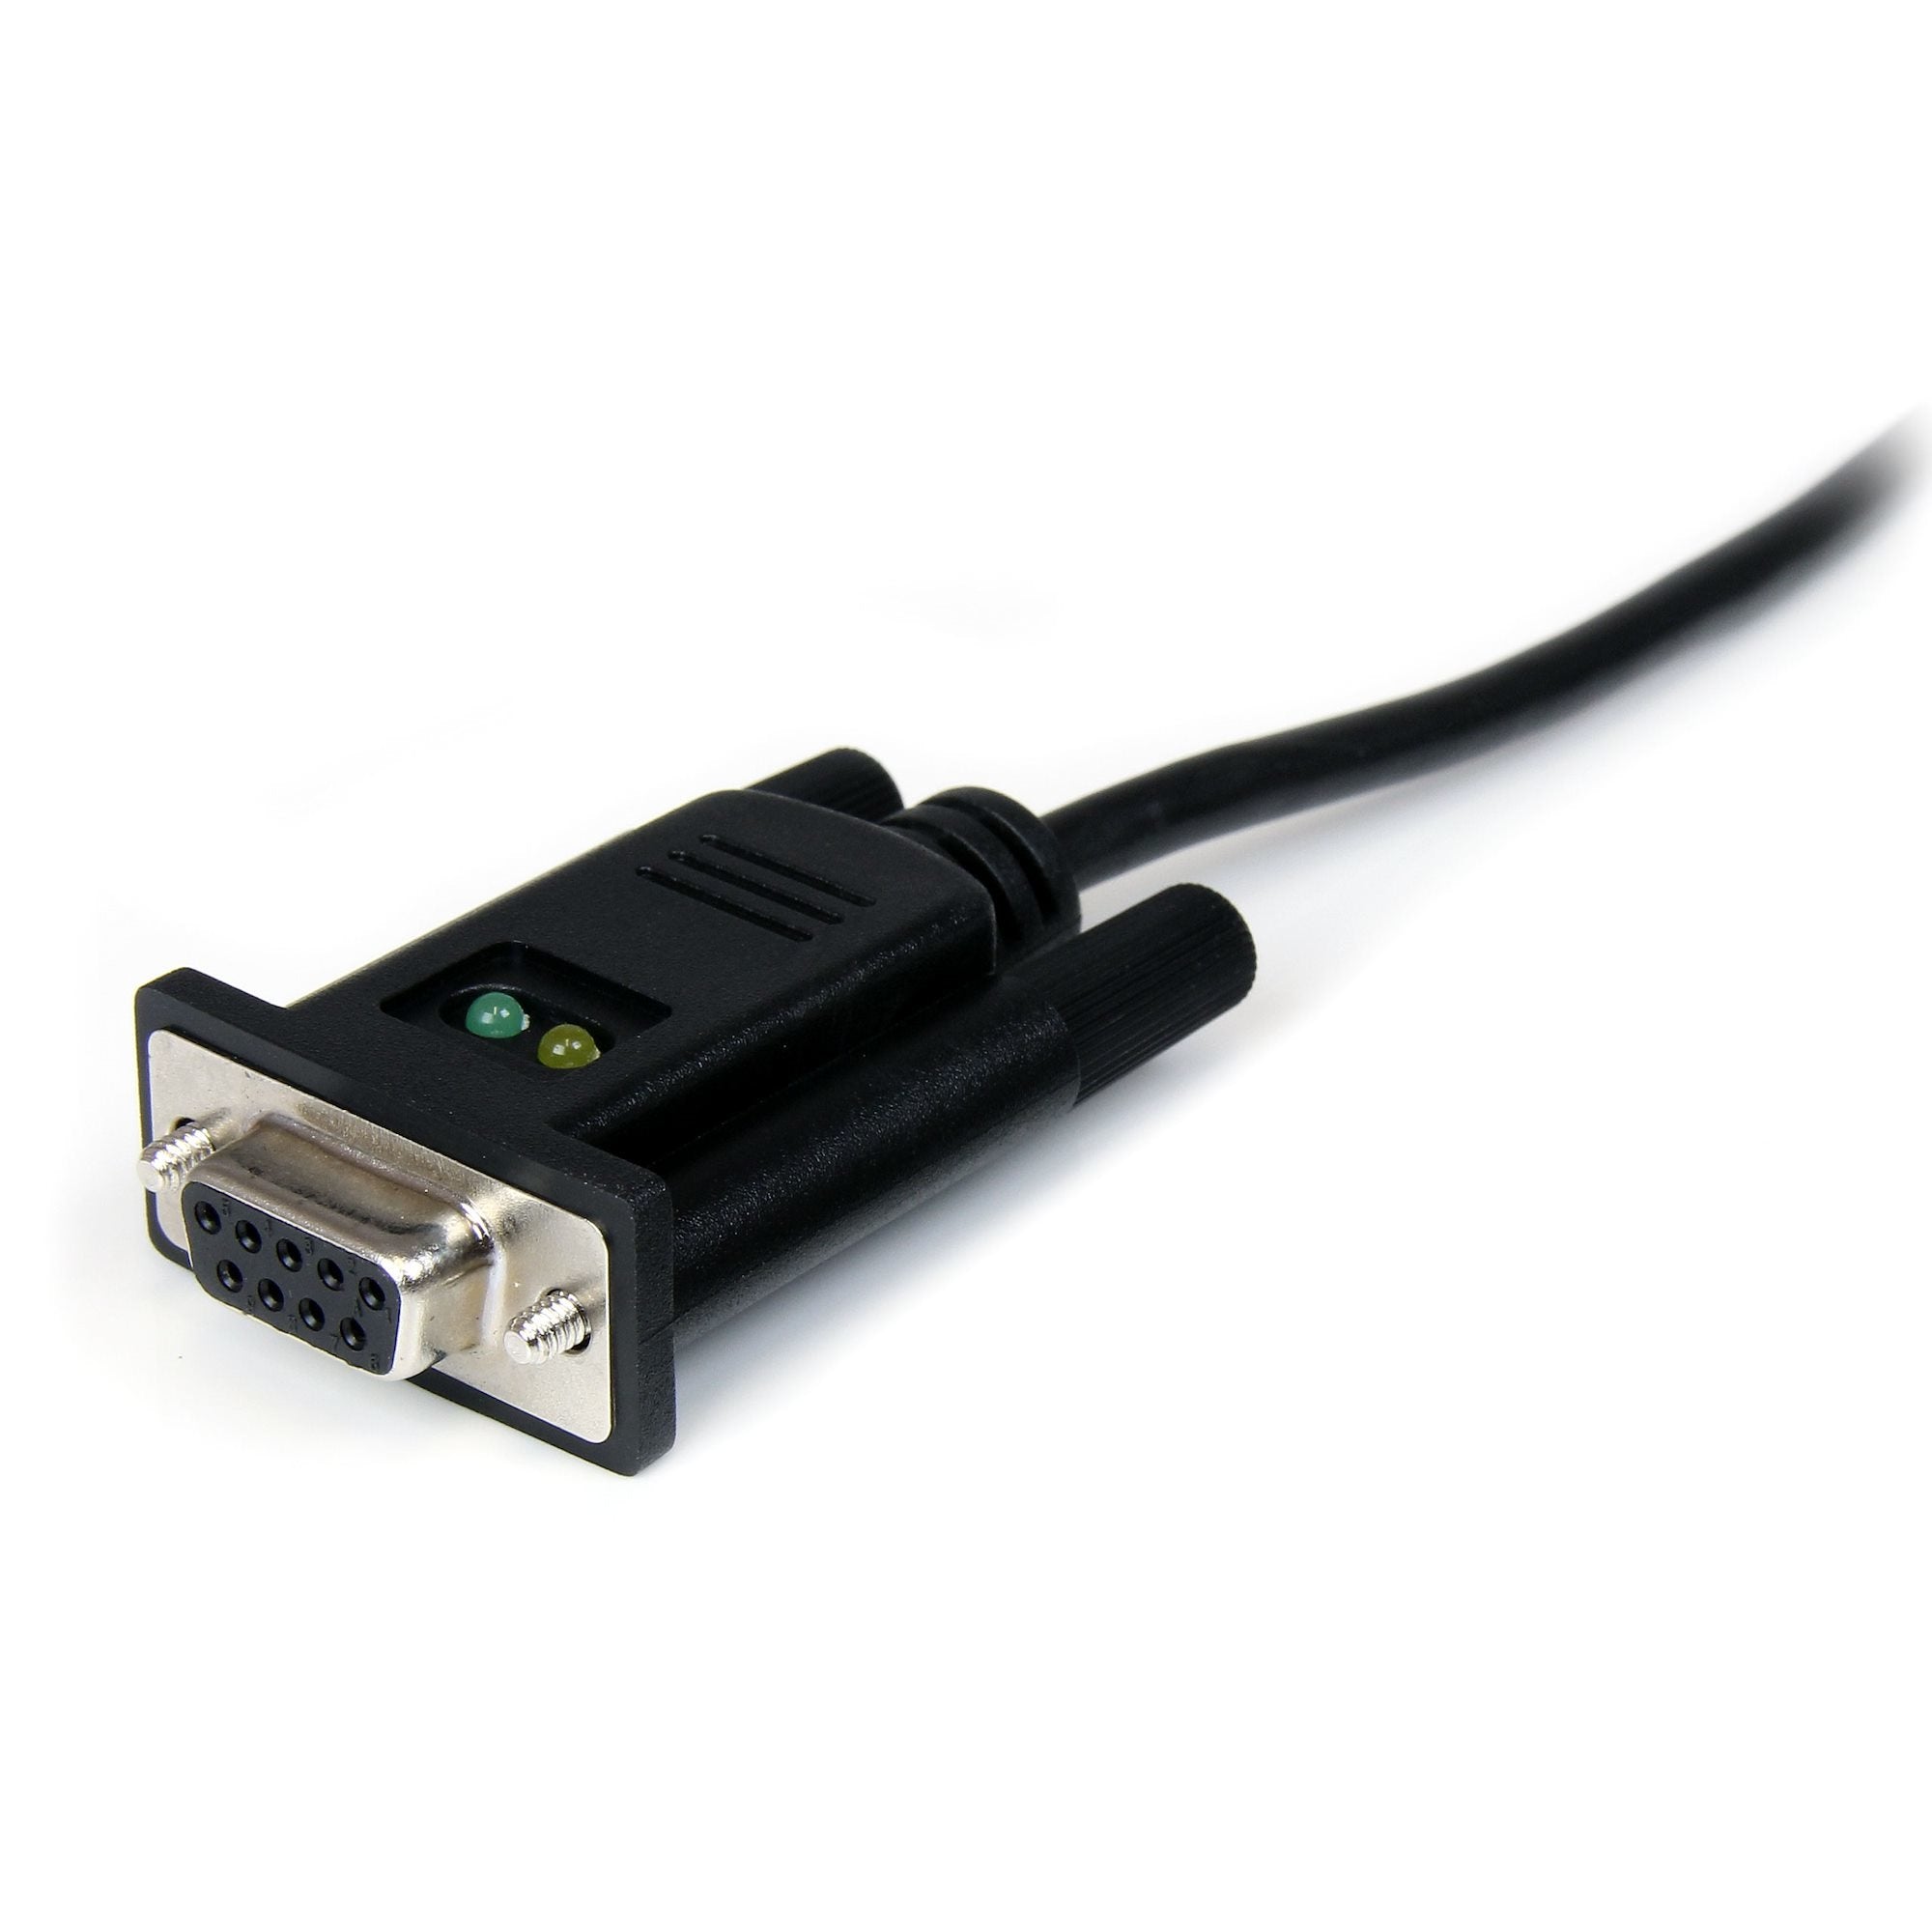 Cable Adaptador De 1 Puerto Usb A Módem Nulo Null Serial Db9 Rs232 Dce Con Ftdi - 1X Usb A Macho - 1X Db9 Hembra - Startech.Com Mod. Icusb232Ftn